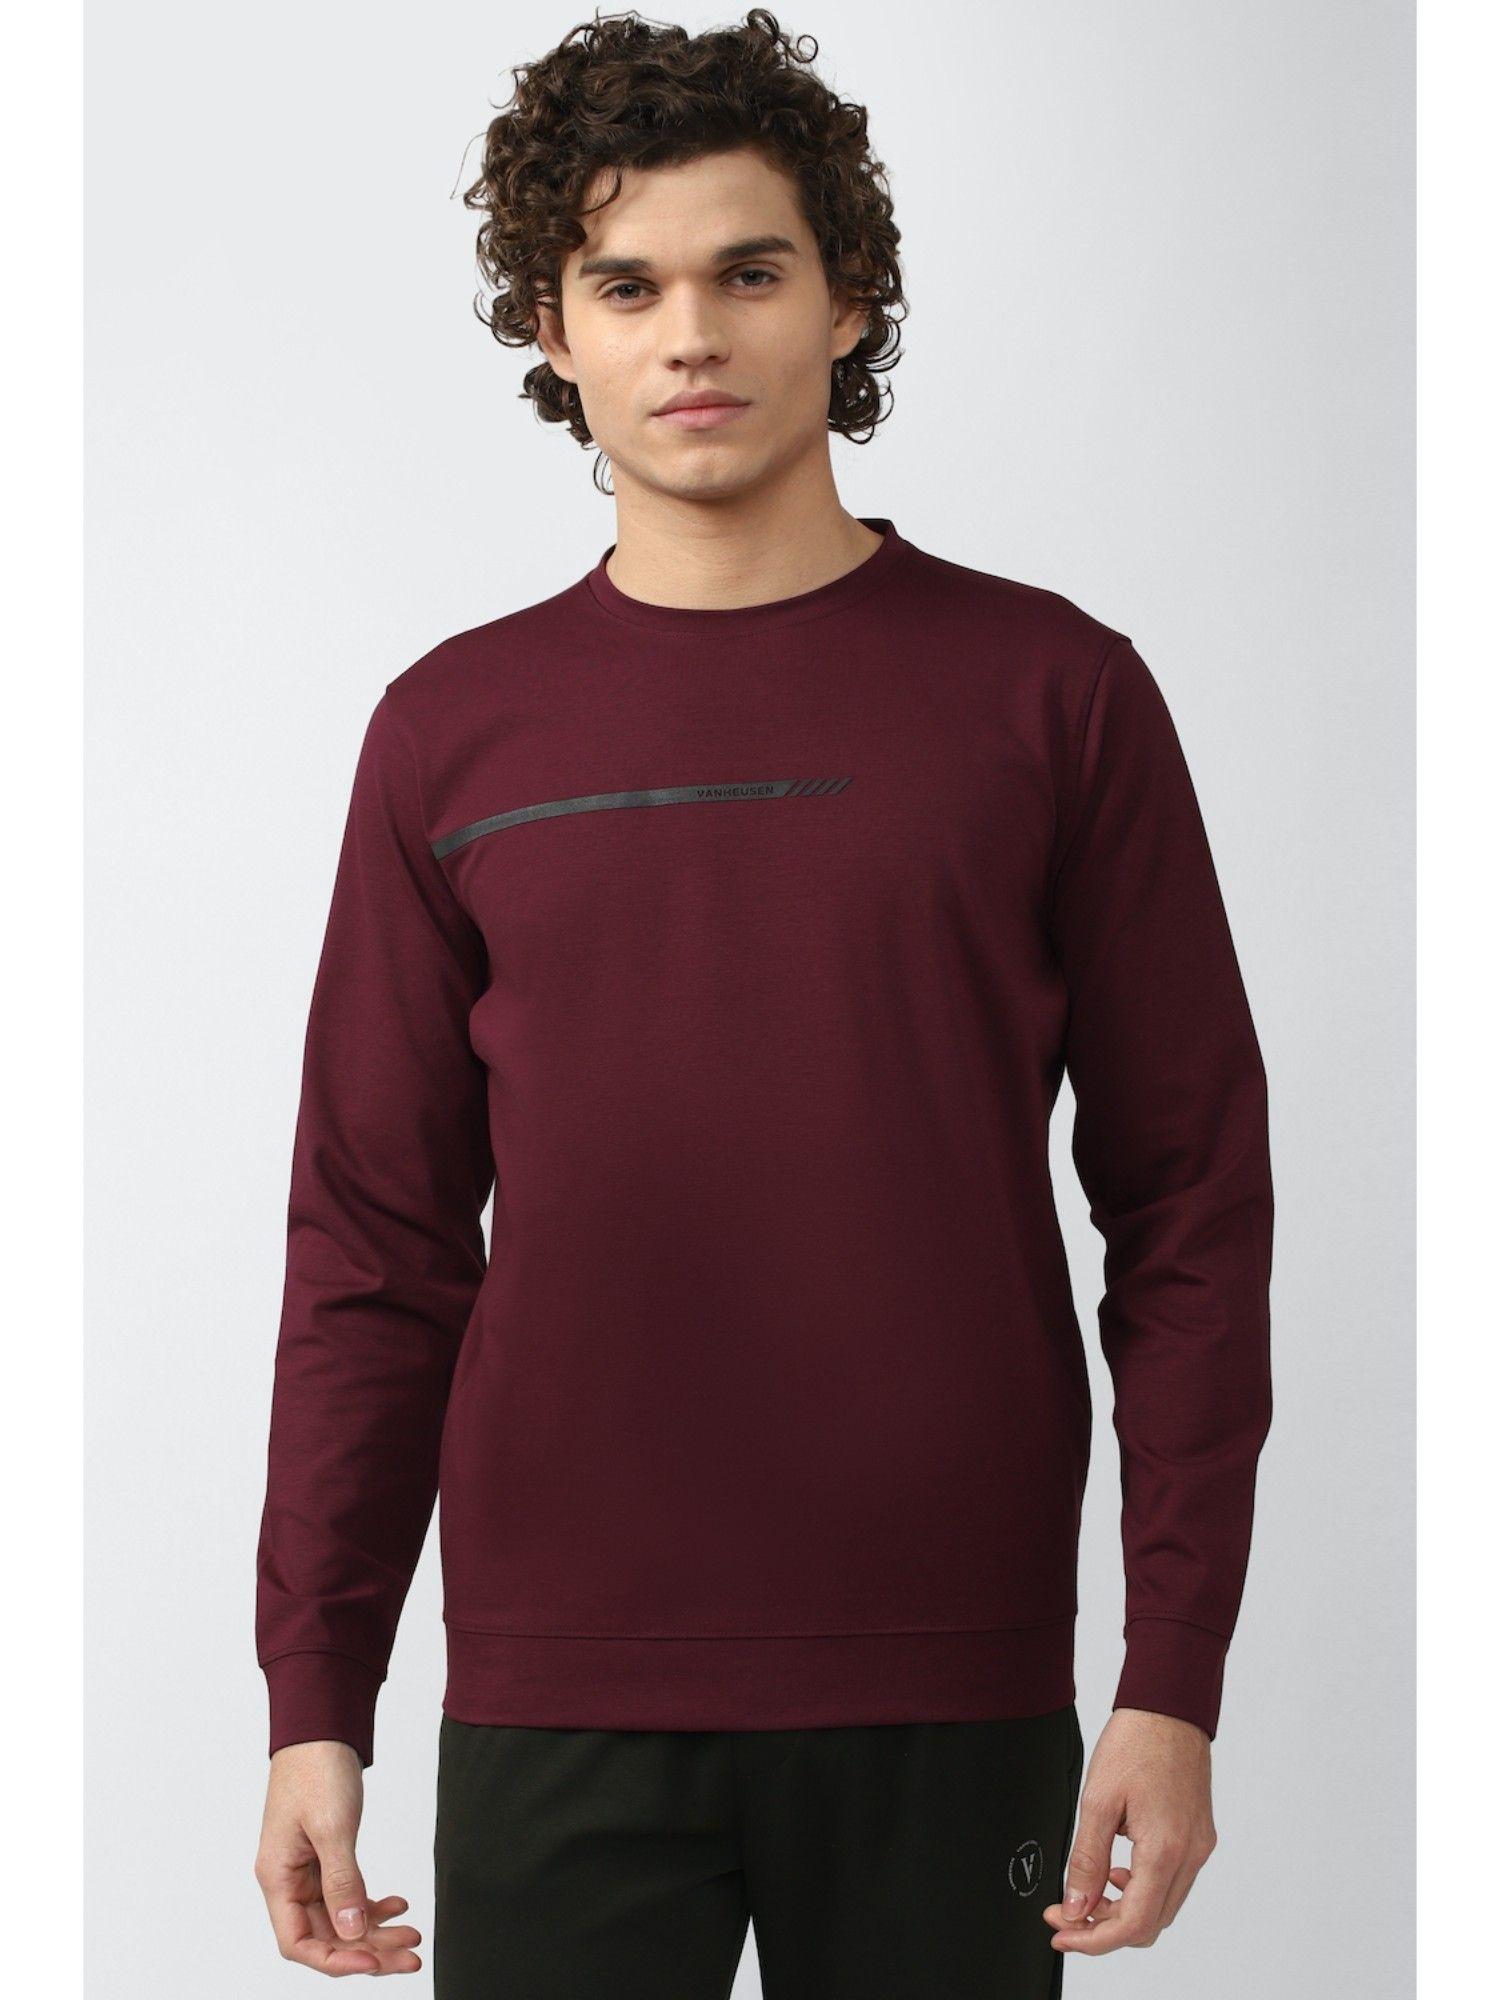 maroon solid sweatshirt